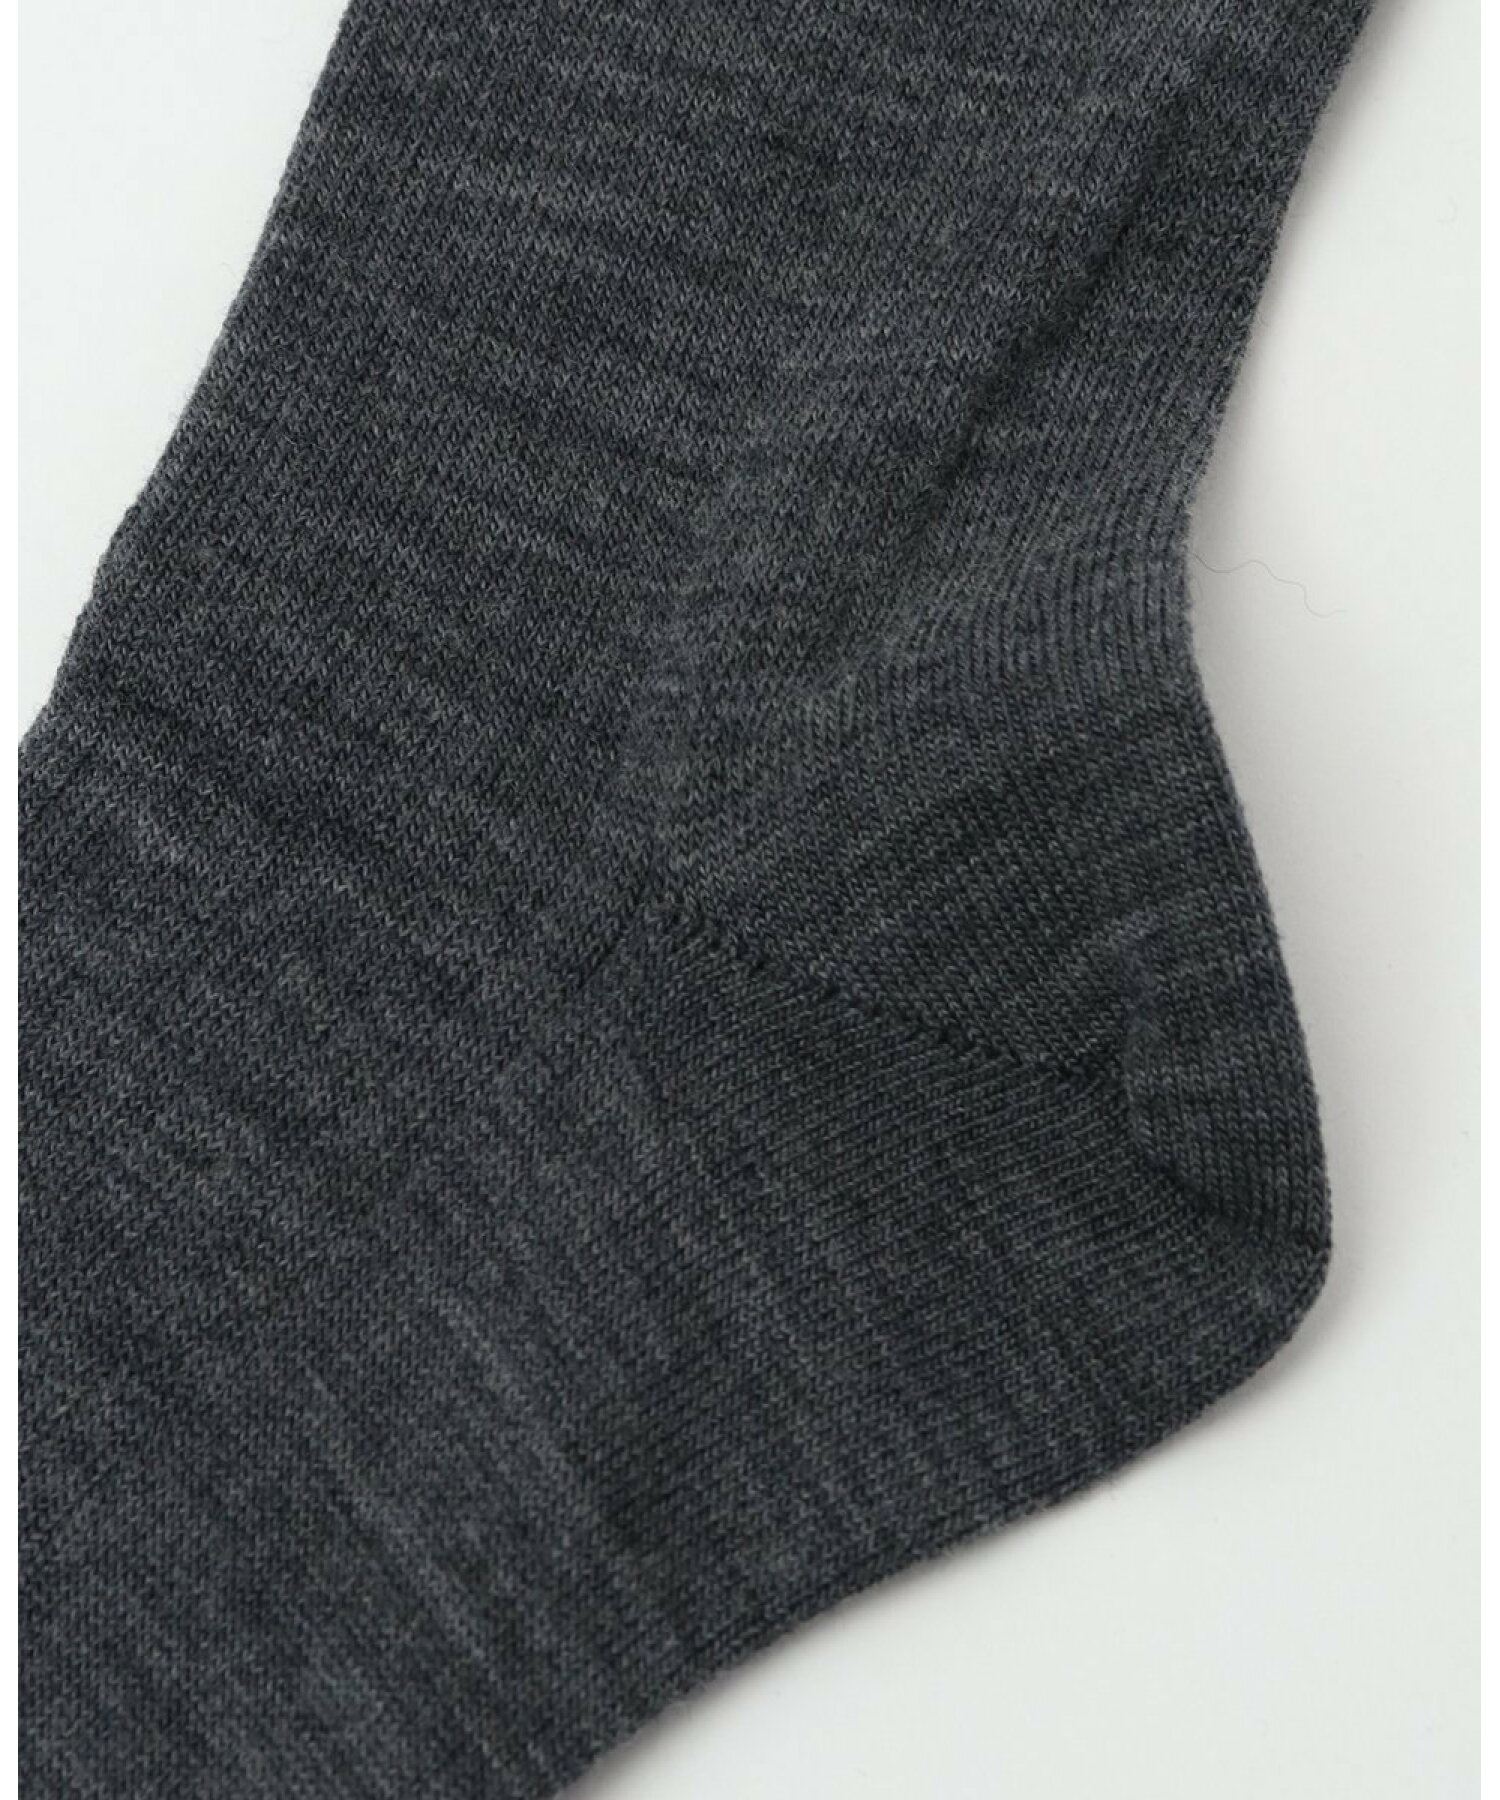 MARCOMOND/176N5/1W-50C wool high socks